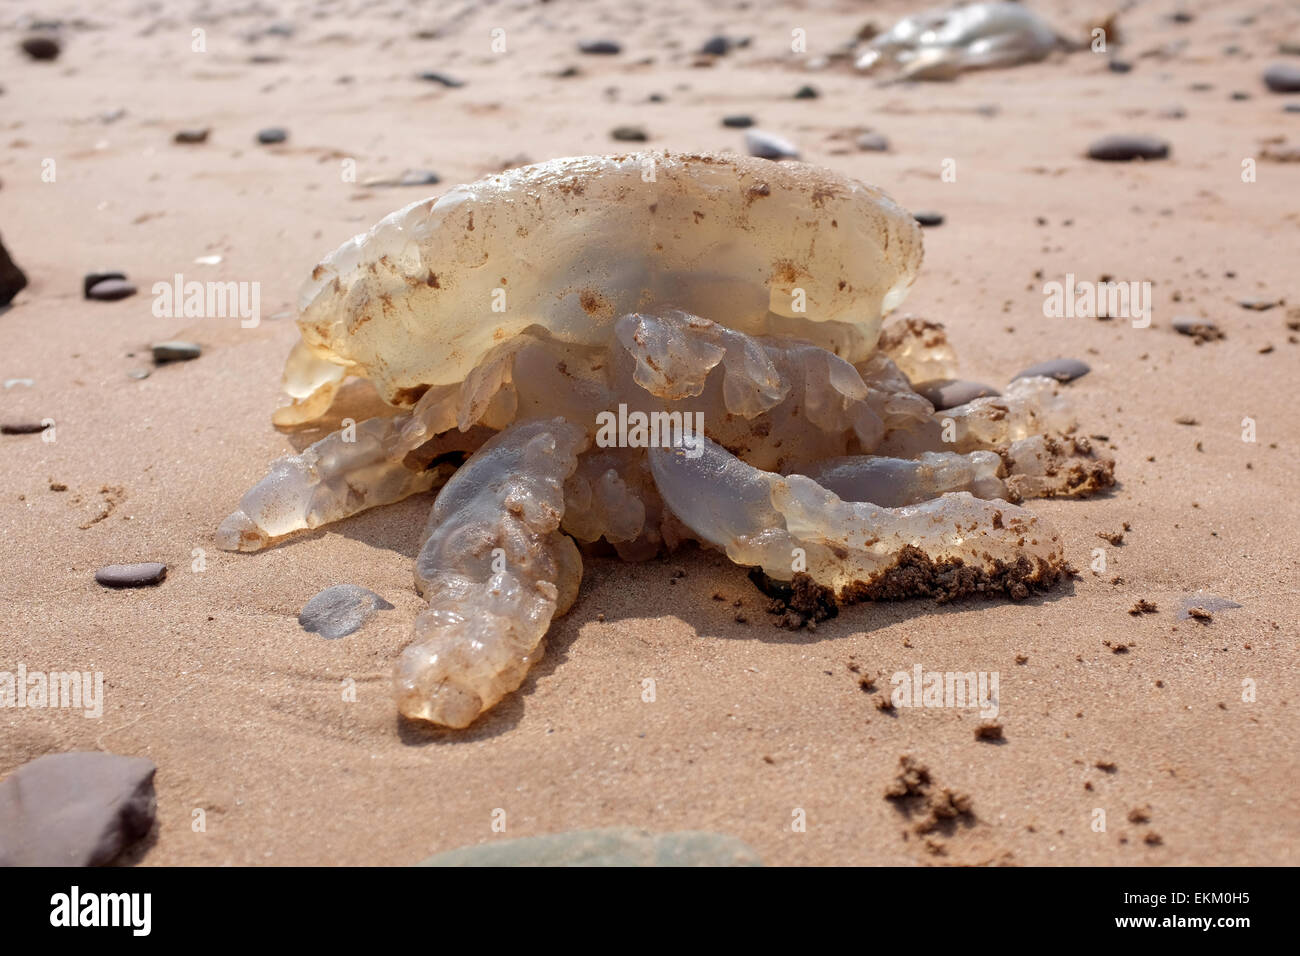 Jellyfish washed up on a UK beach Dawlish Warren England Stock Photo